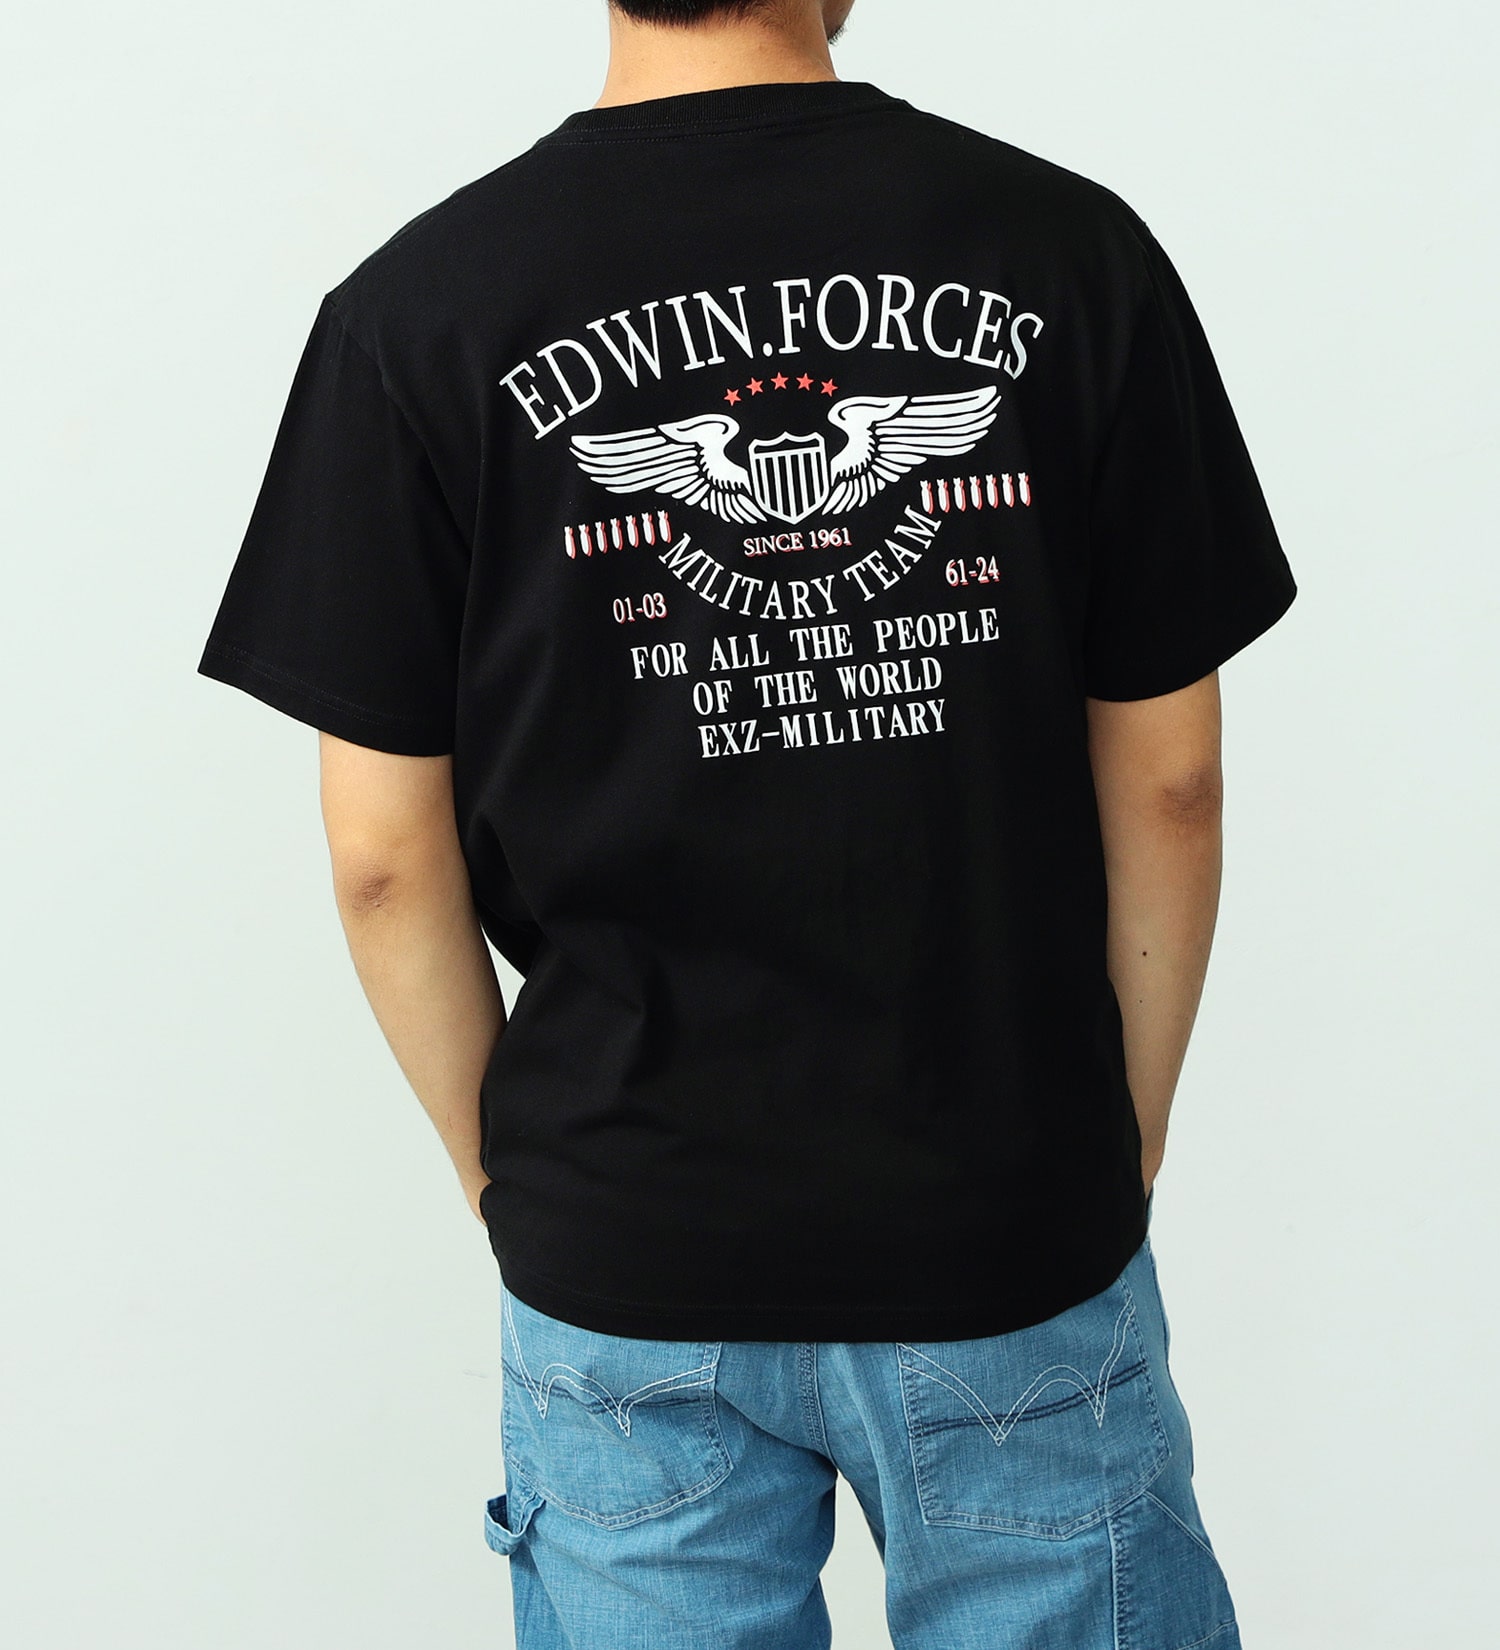 EDWIN(エドウイン)のミリタリーバックプリント半袖Tシャツ【アウトレット店舗・WEB限定】|トップス/Tシャツ/カットソー/メンズ|ブラック